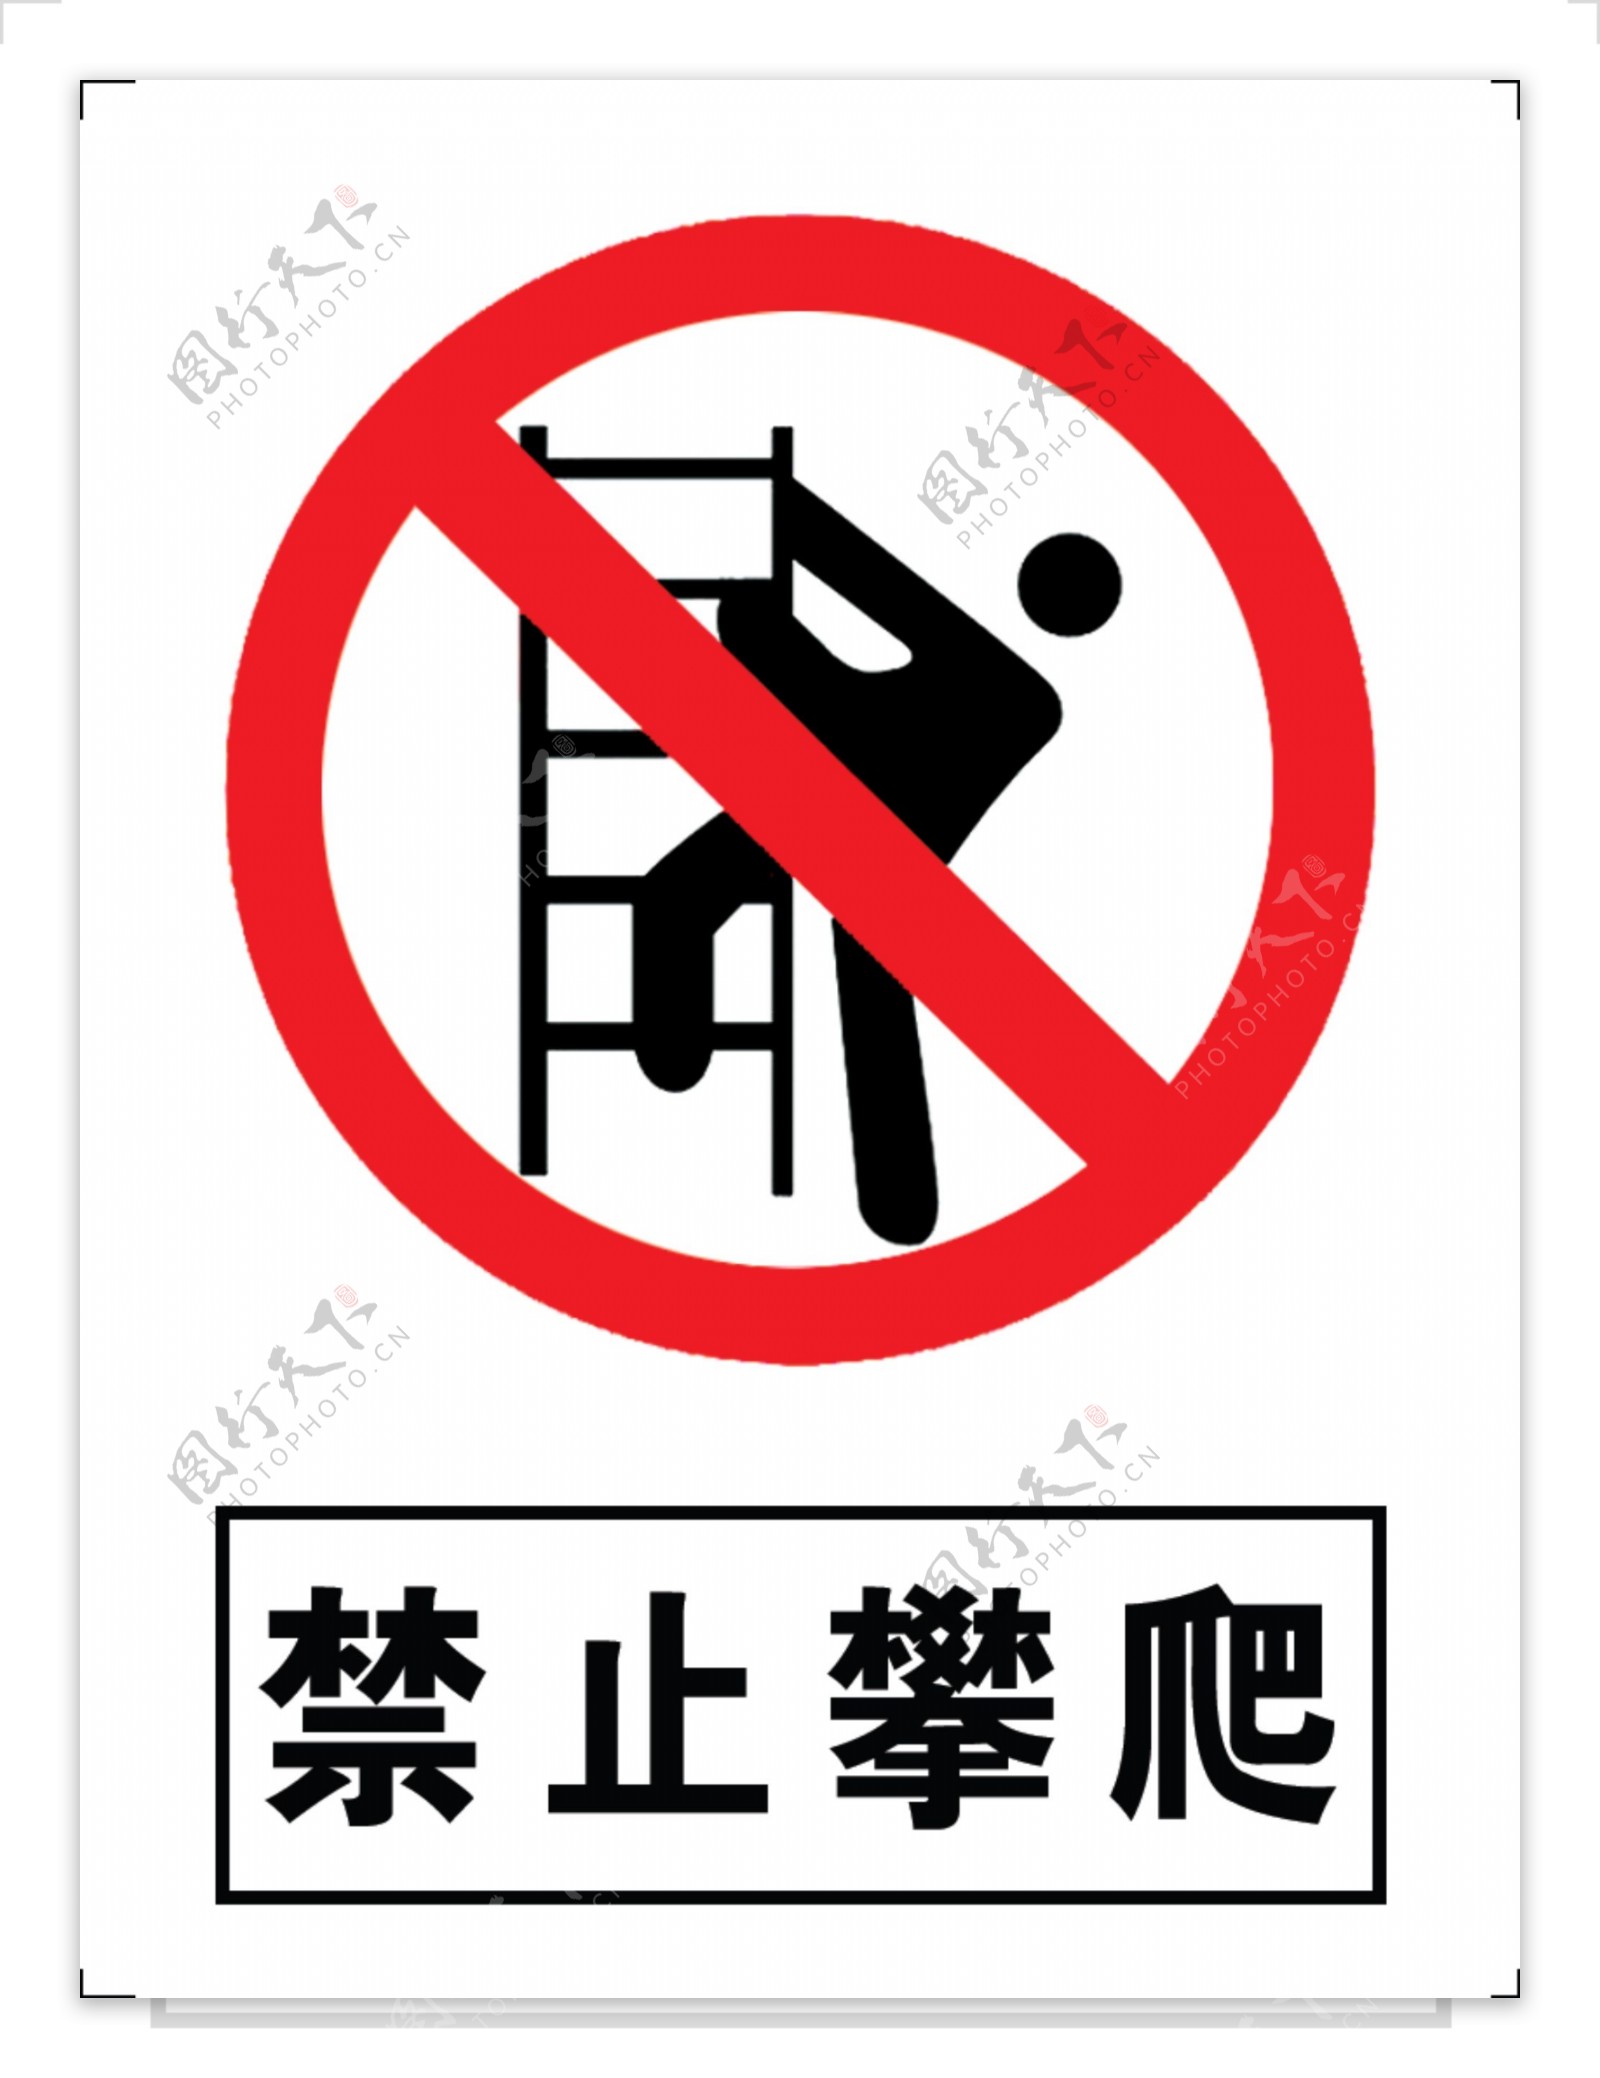 禁止攀爬标志LOGO